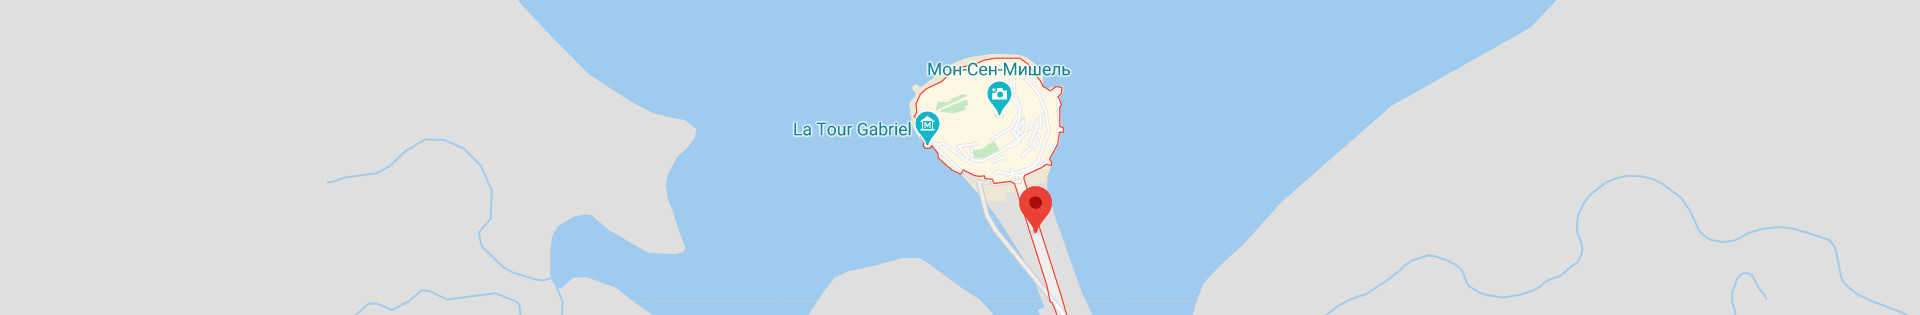 Остров-замок Мон-Сен-Мишель (Mont Saint Michel) — Франция | Место № 2  